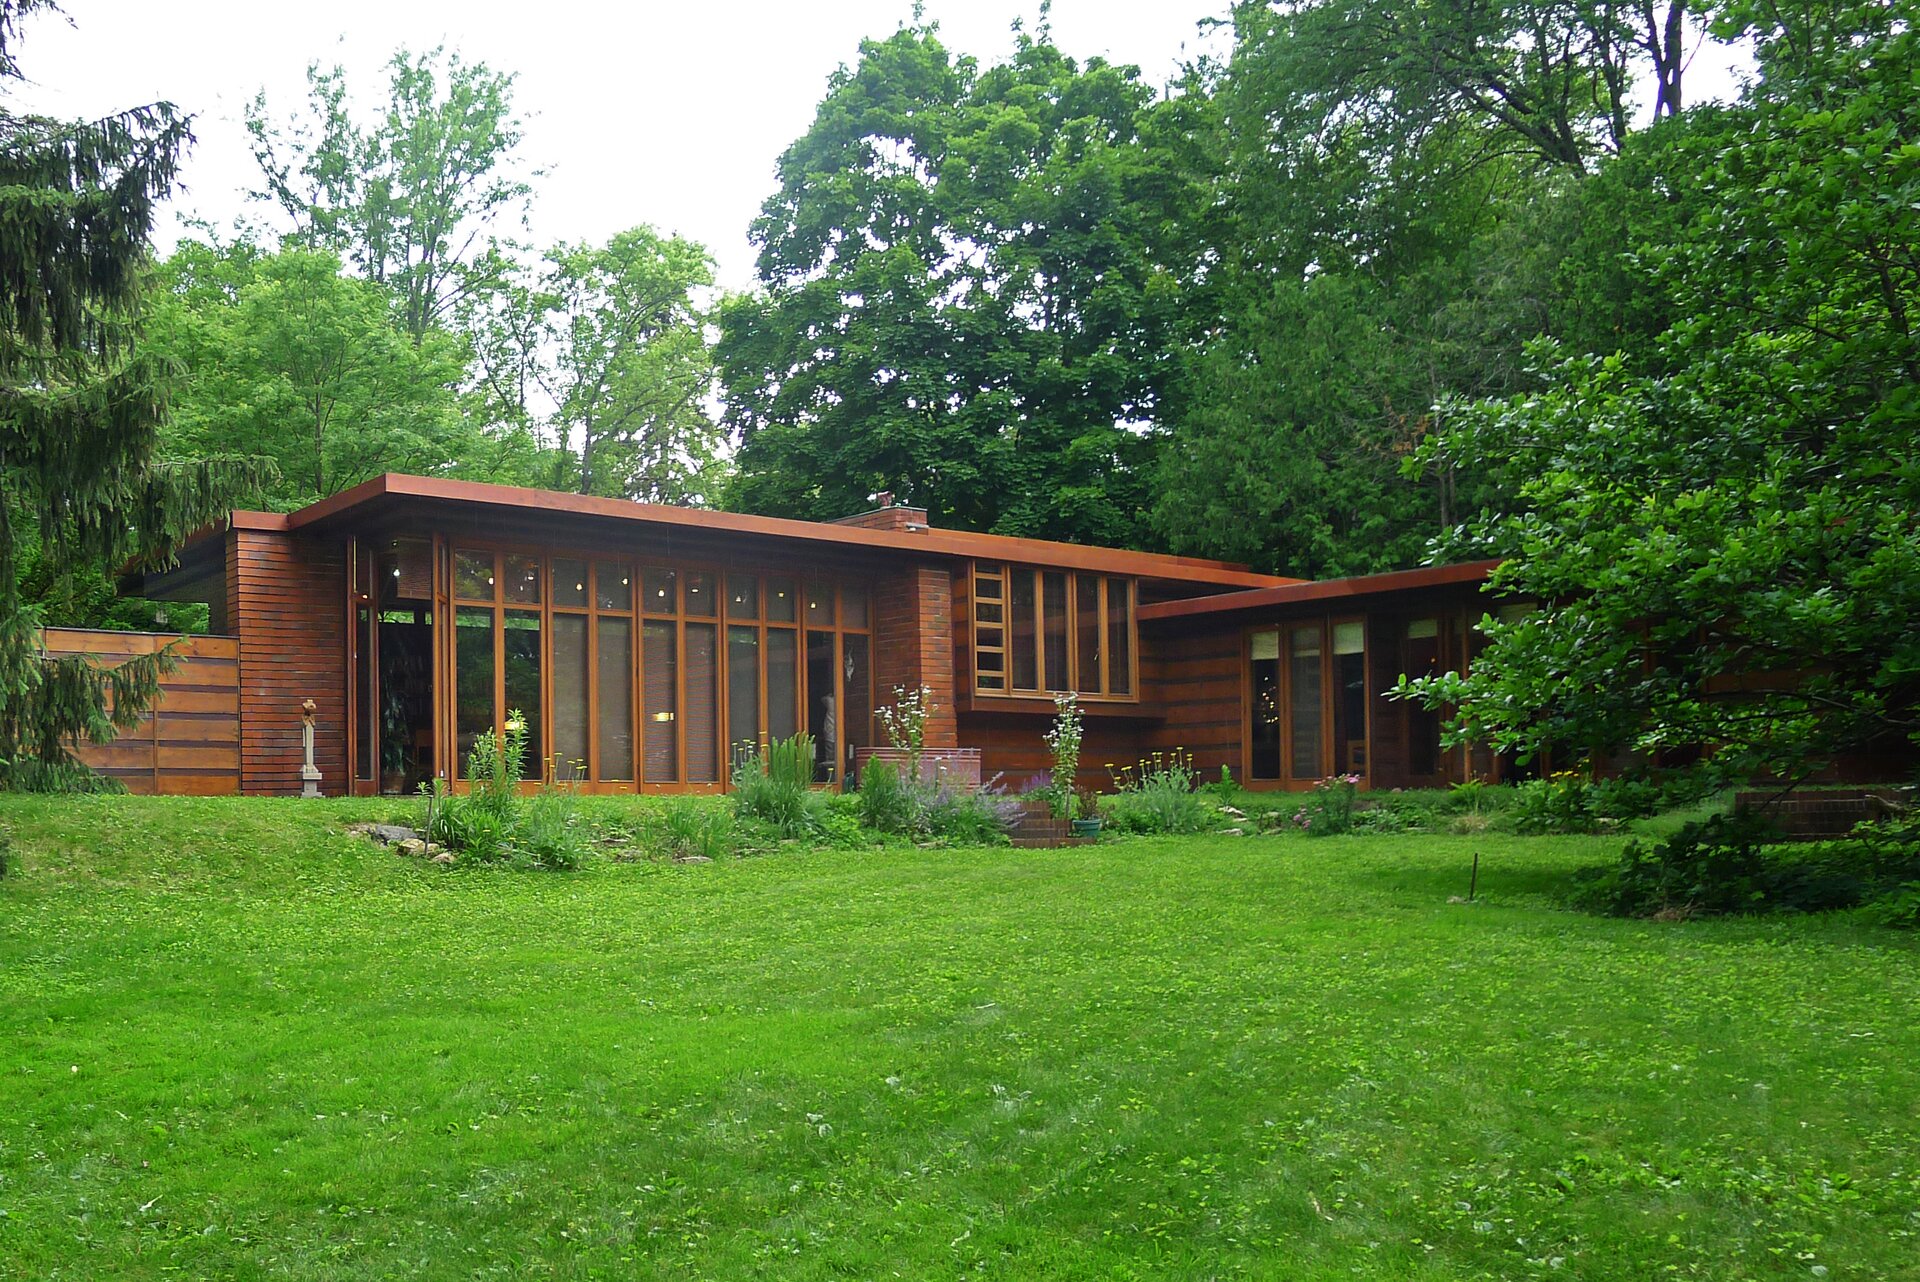 Ilustracja o kształcie poziomego prostokąta przedstawia przykład domu usonijnego - pierwszy dom Herberta i Katherine Jacobsów zaprojektowany przez Franka Lloyda Wrighta. Dom o drewnianej  konstrukcji opartej na szkielecie został usytuowany na tle zieleni, pośród drzew. Jest niski i rozłożysty. Posiada wiele dużych okien. 